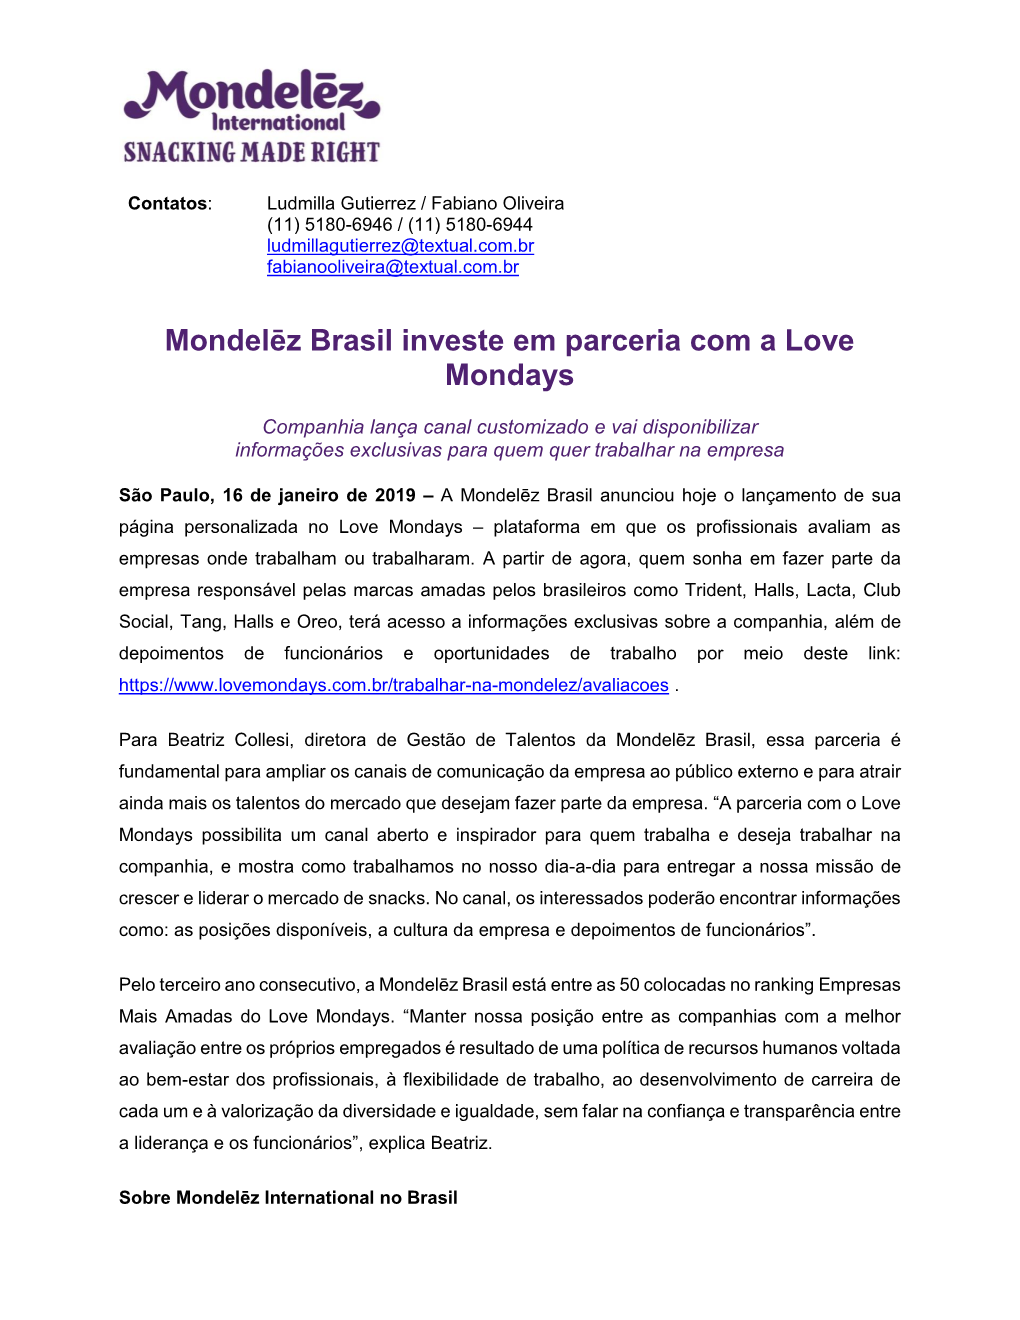 Mondelēz Brasil Investe Em Parceria Com a Love Mondays